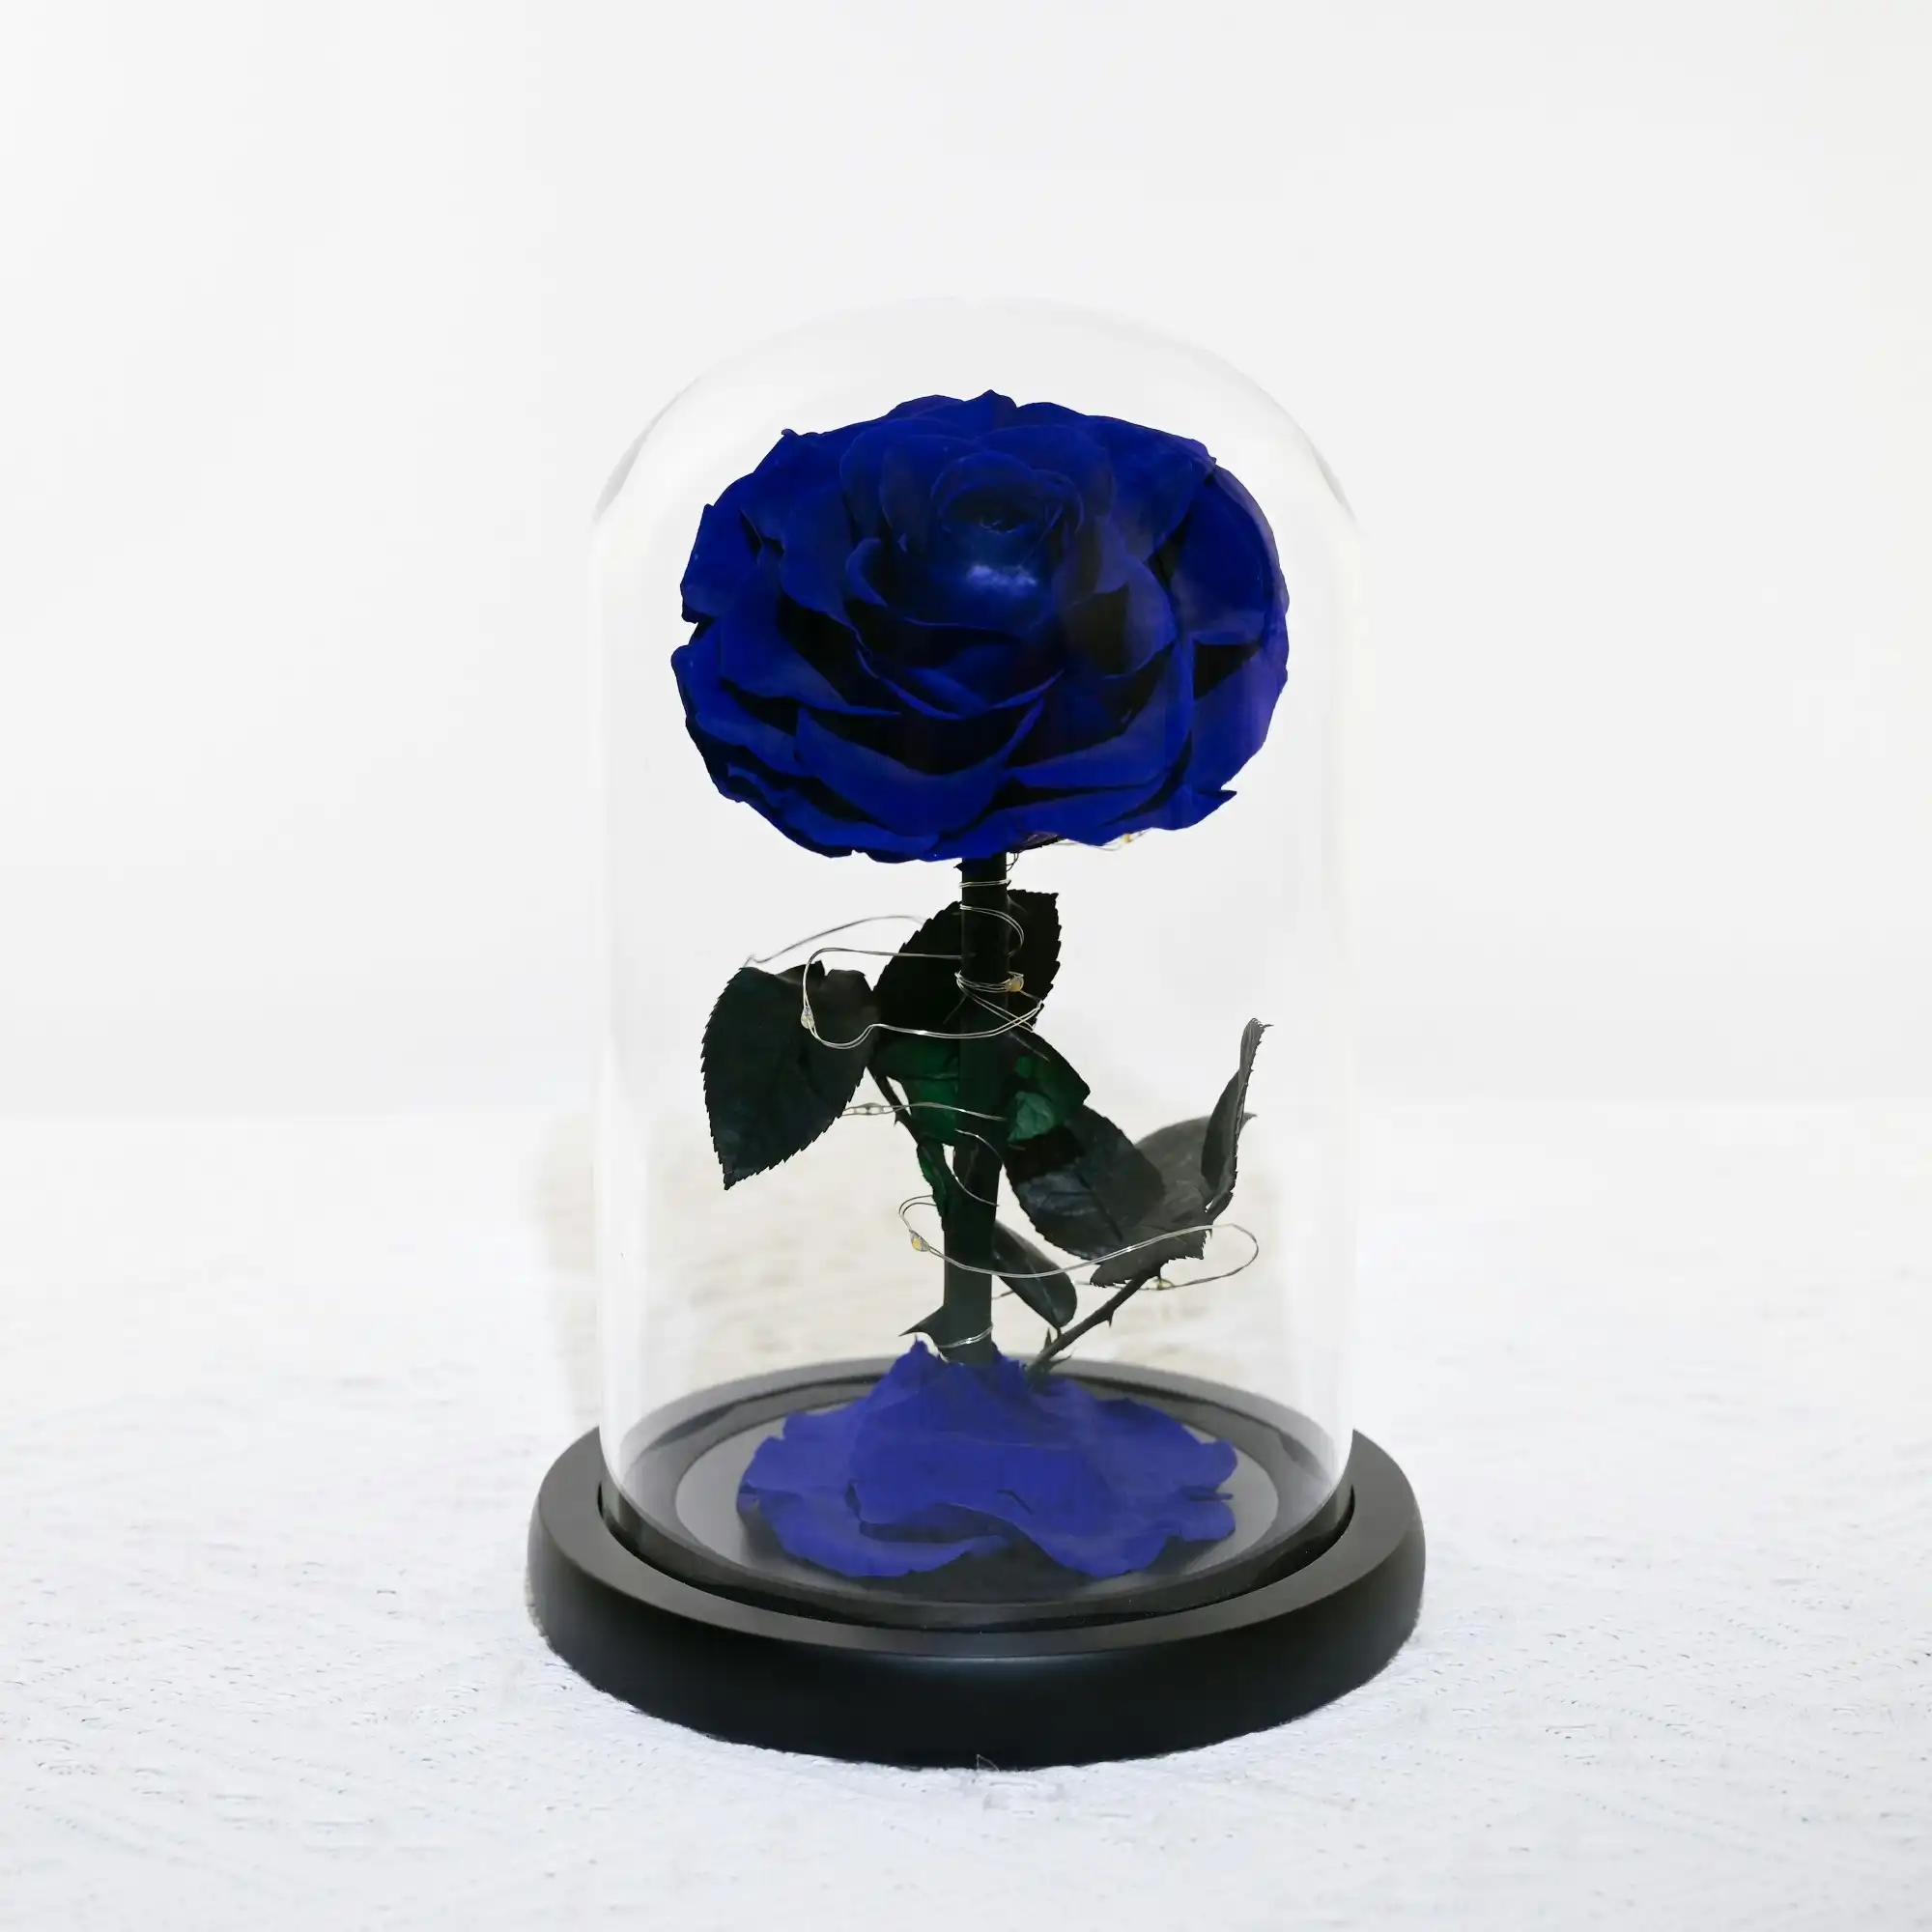 Vistara Timeless Rose - Natural 20cm Blue Preserved Rose With LED Light